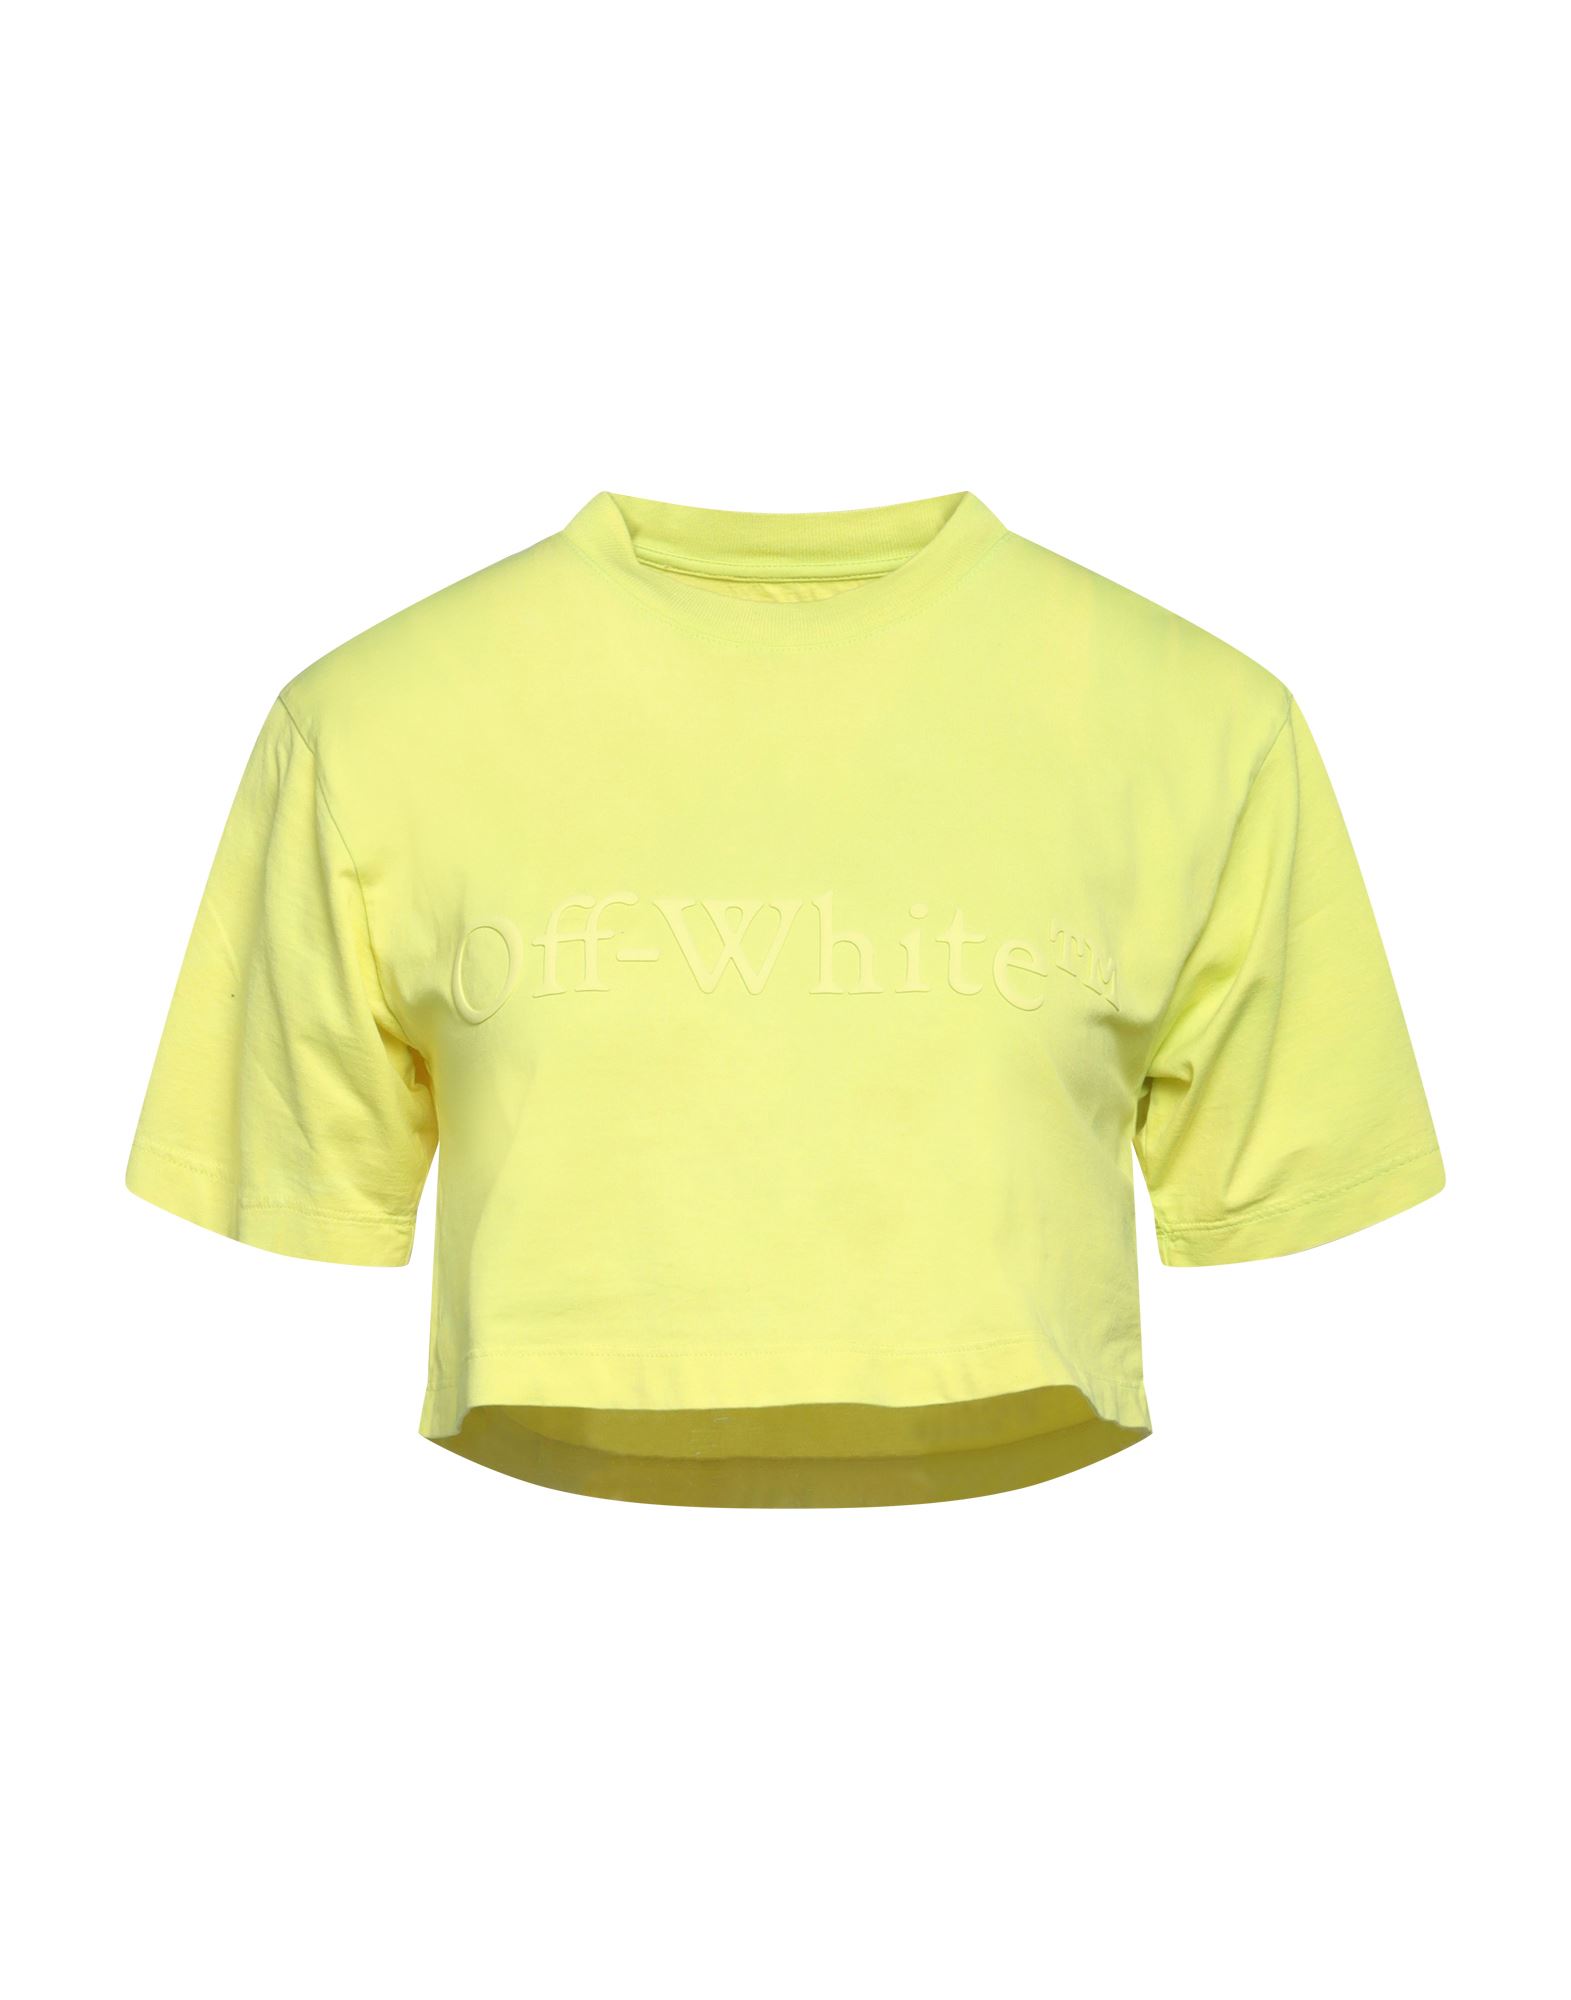 Off-white Woman T-shirt Yellow Size S Cotton, Elastane